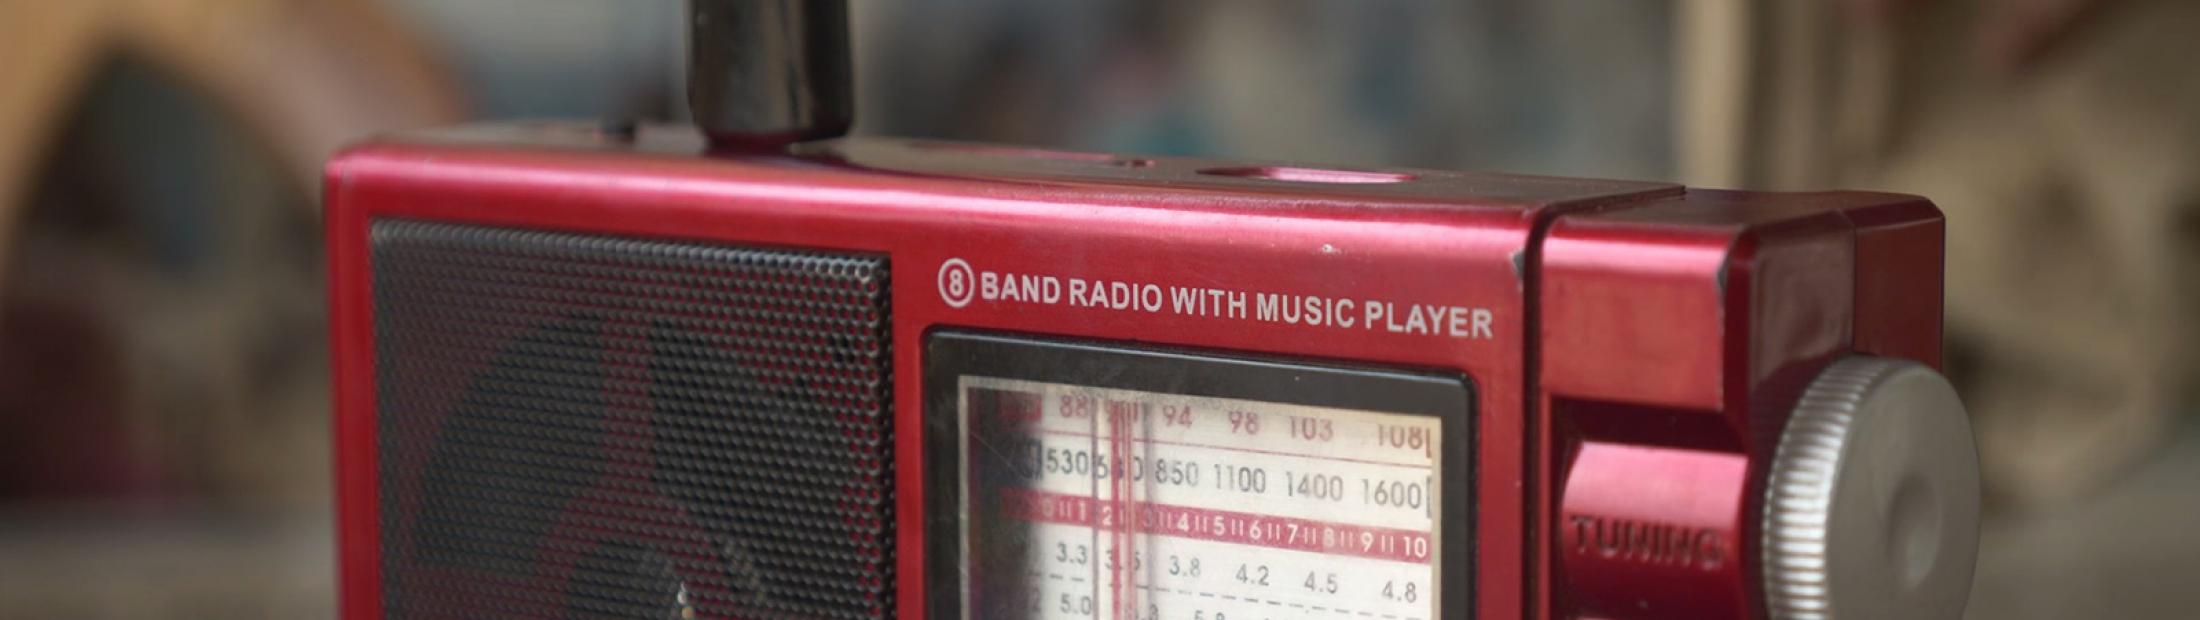 Radio rohingya, una radio comunitaria para los refugiados